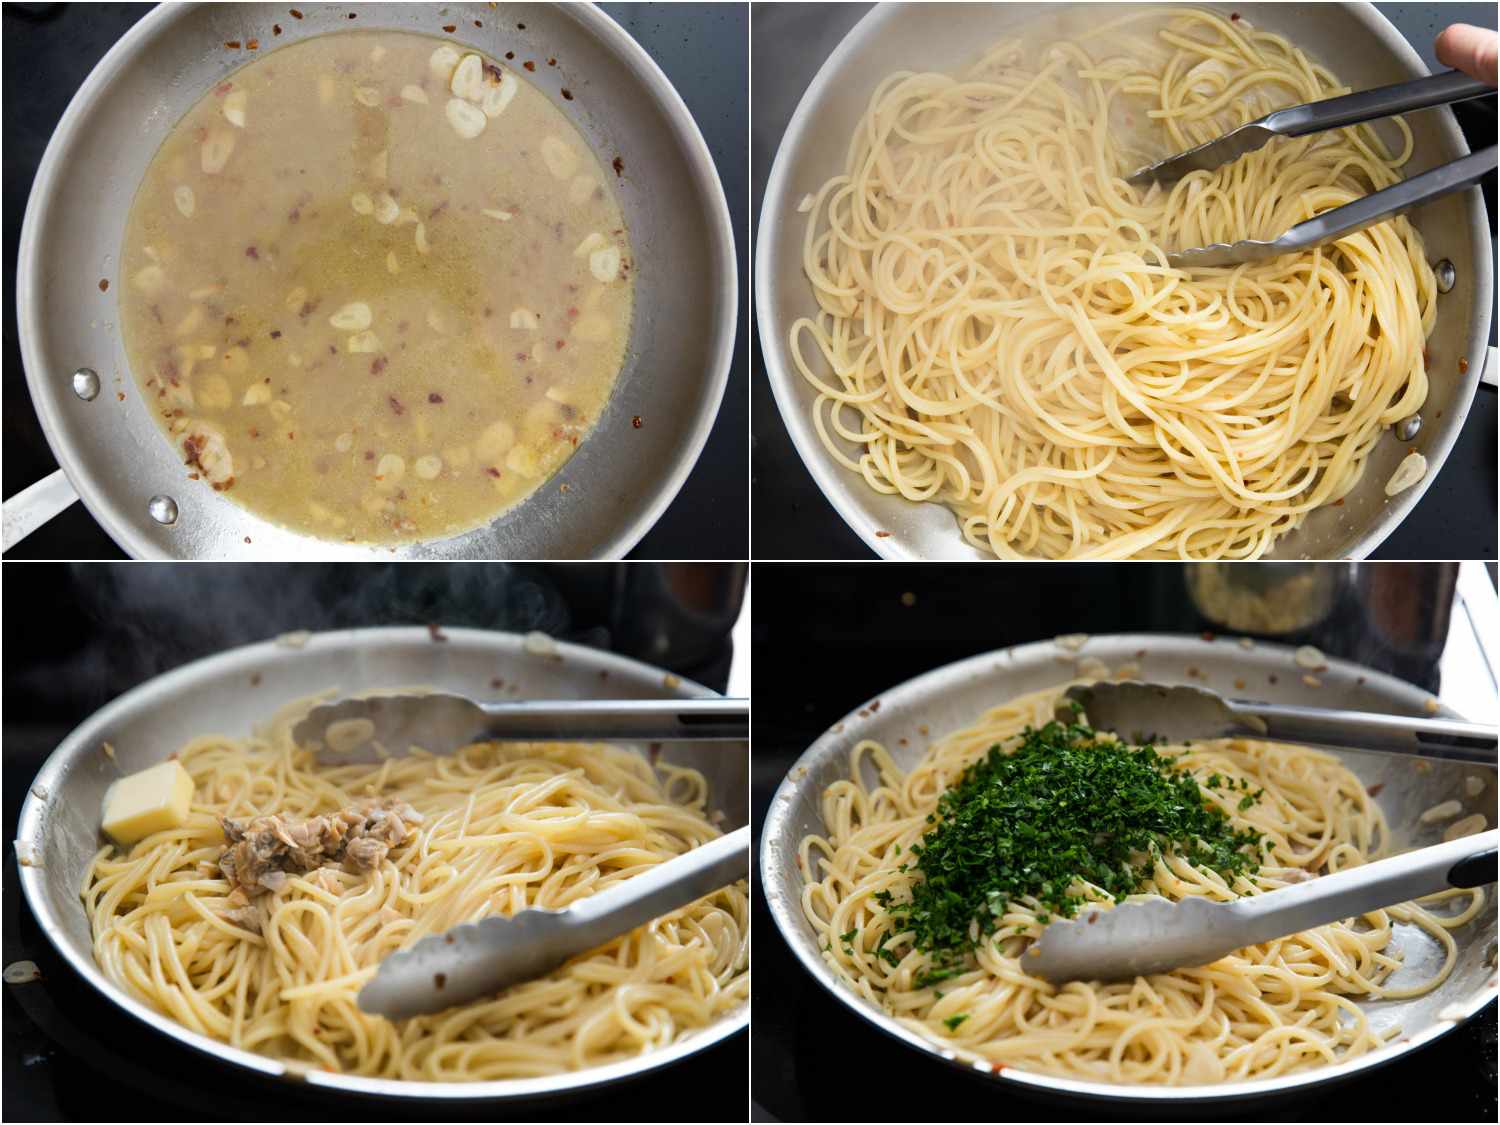 意大利面的拼贴被添加到锅充满黄油和大蒜gydF4y2Ba